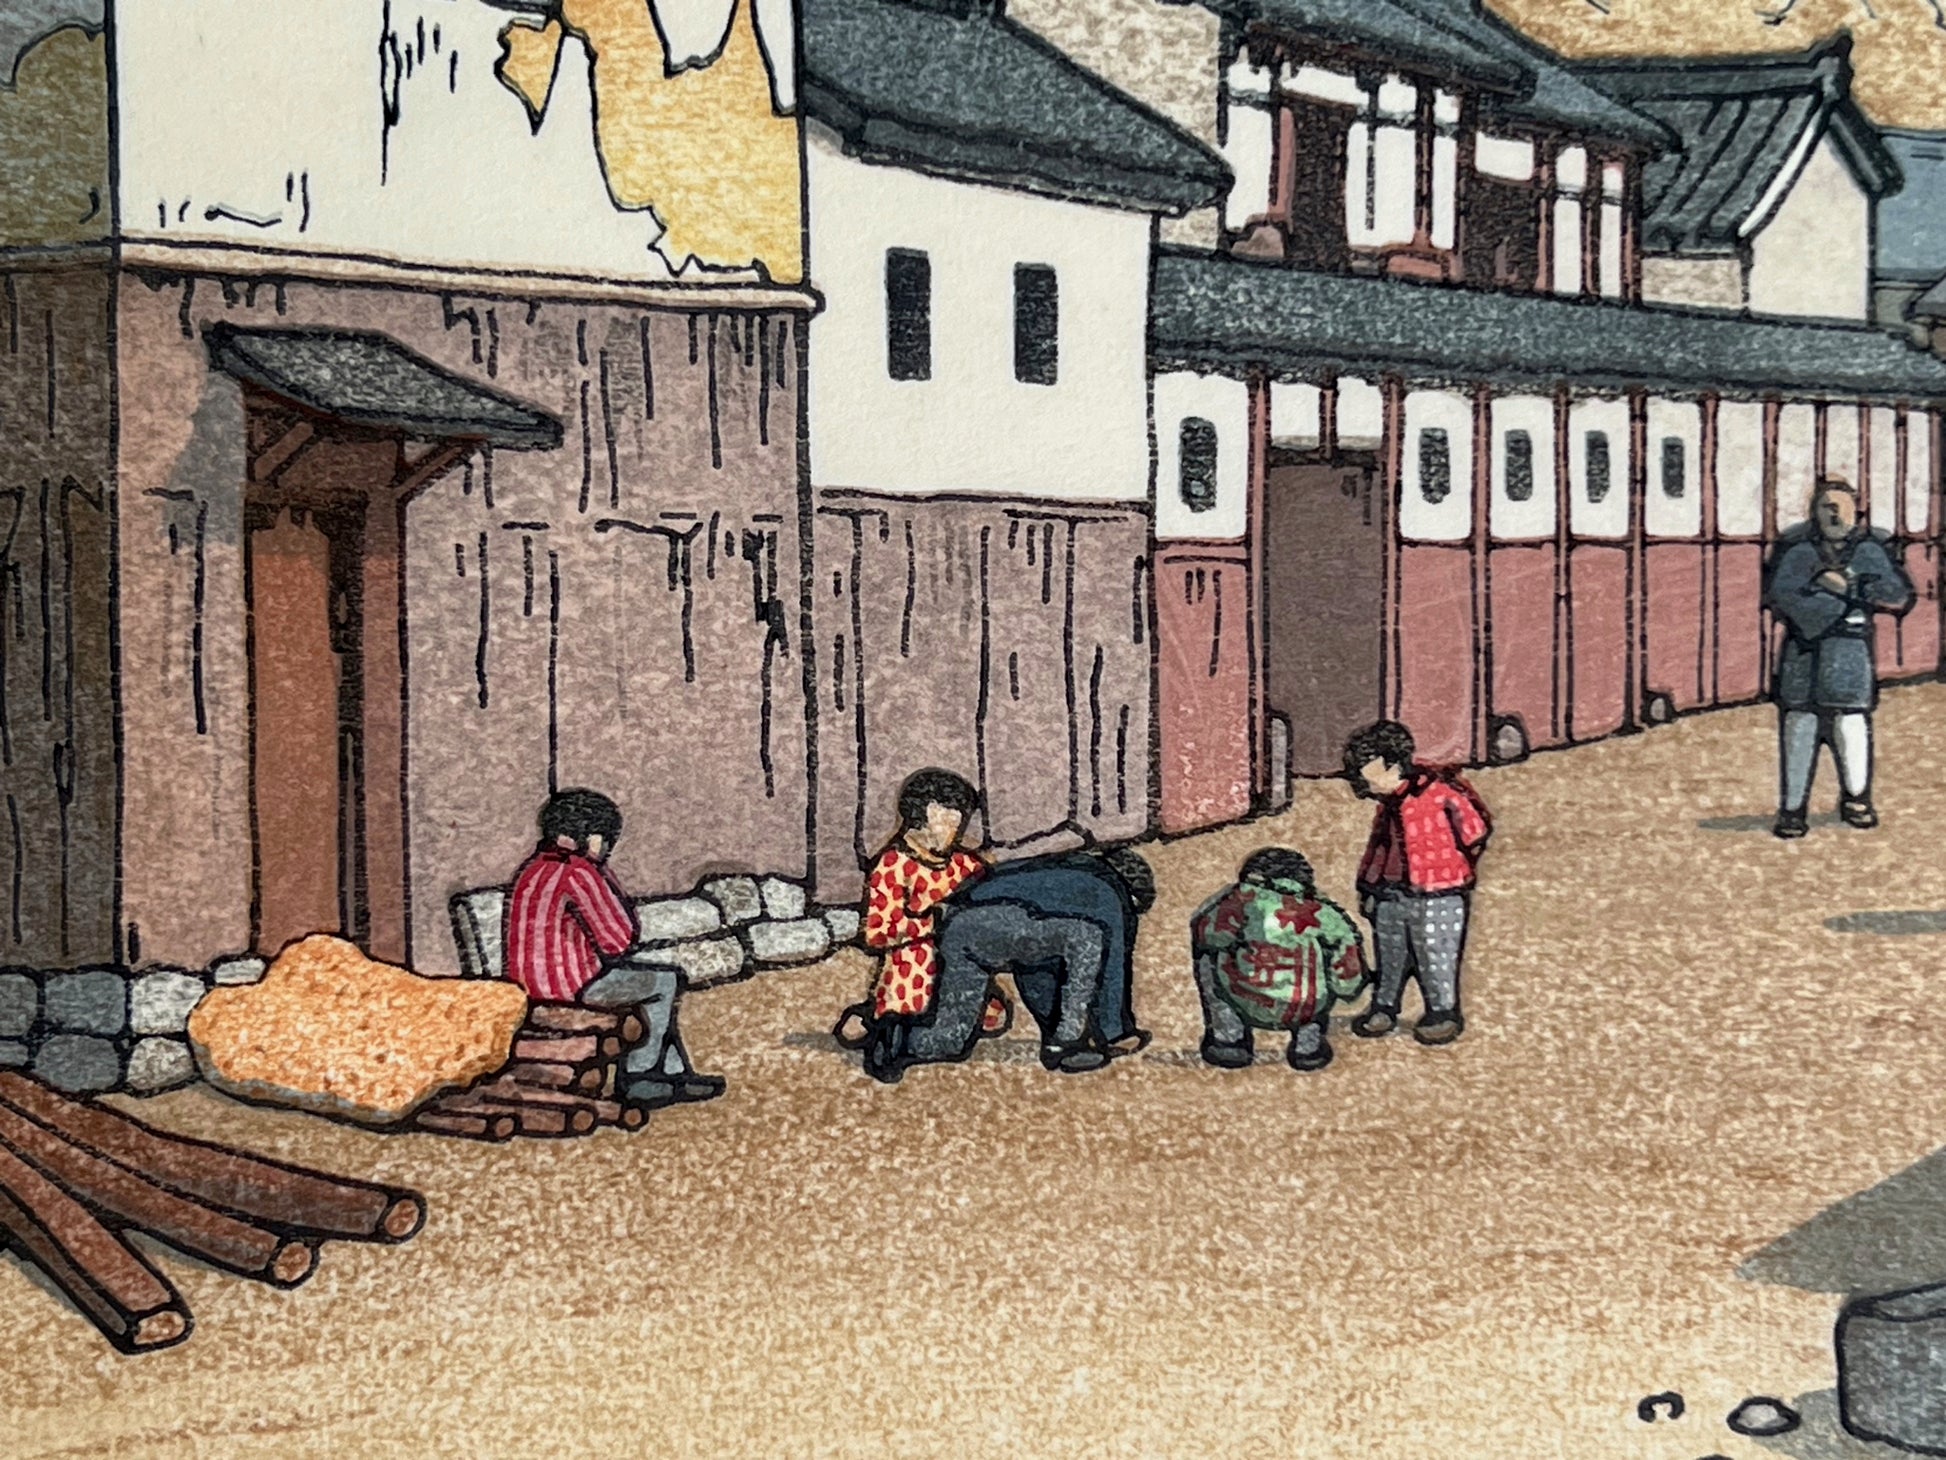 Enfants qui jouent, chemises colorées, homme qui se promène, rue japonaise, bûches. 